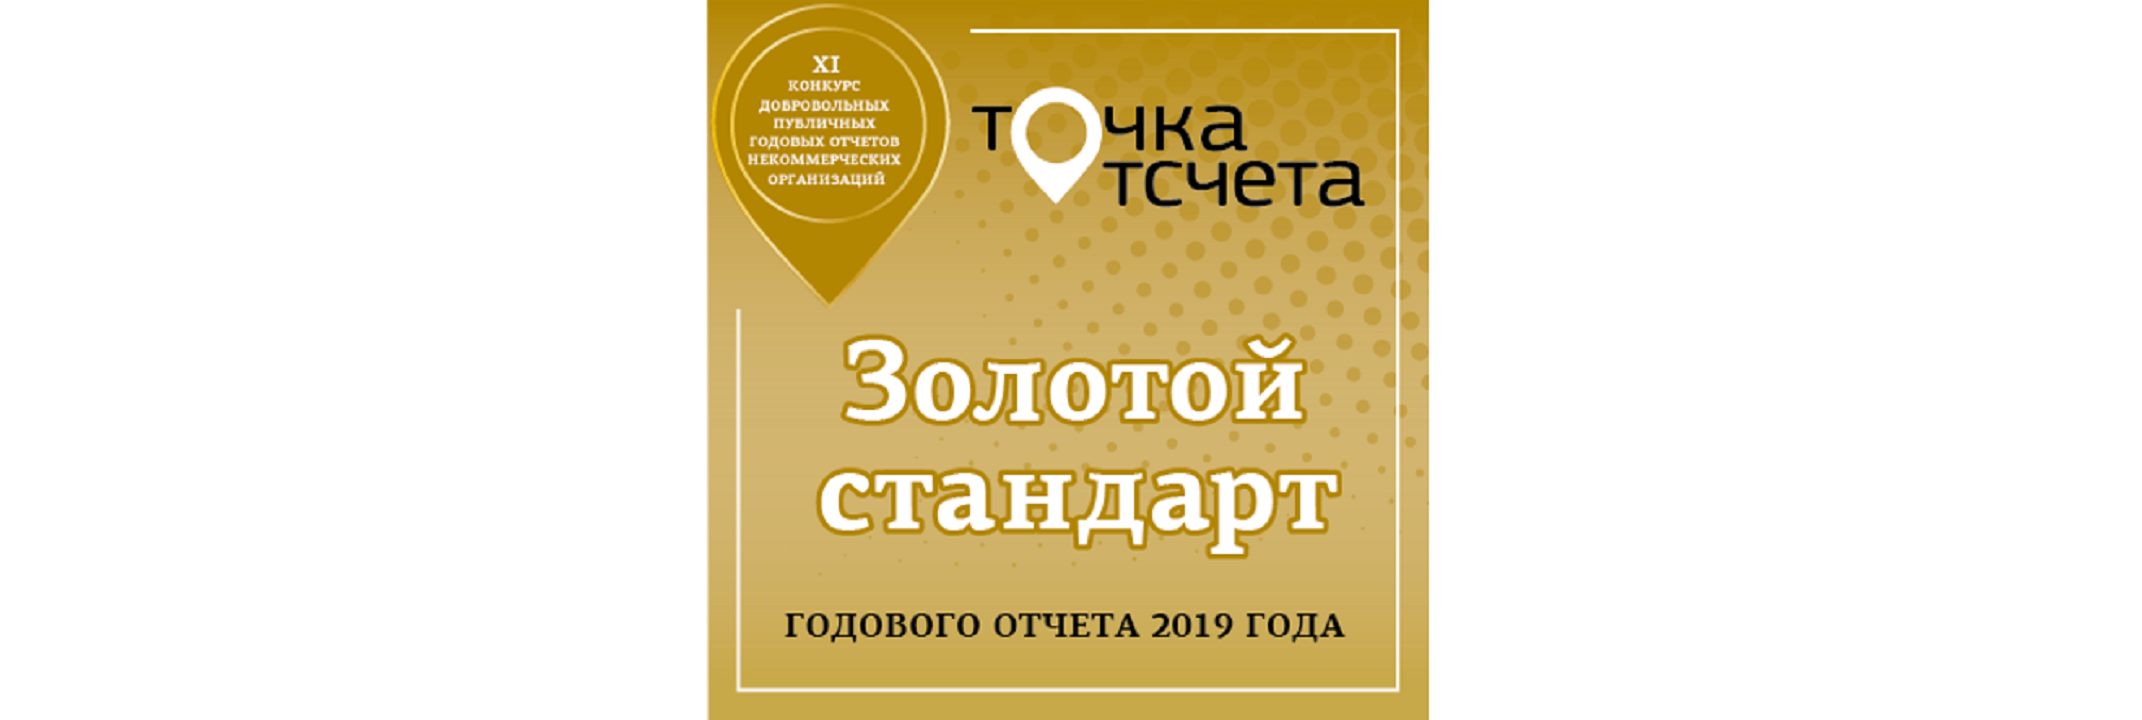 На Всероссийском конкурсе добровольных публичных годовых отчетов НКО "Точка отсчета" были подведены итоги по отчетам за 2020 год. Лига мечты попала в список «Золотого стандарта»